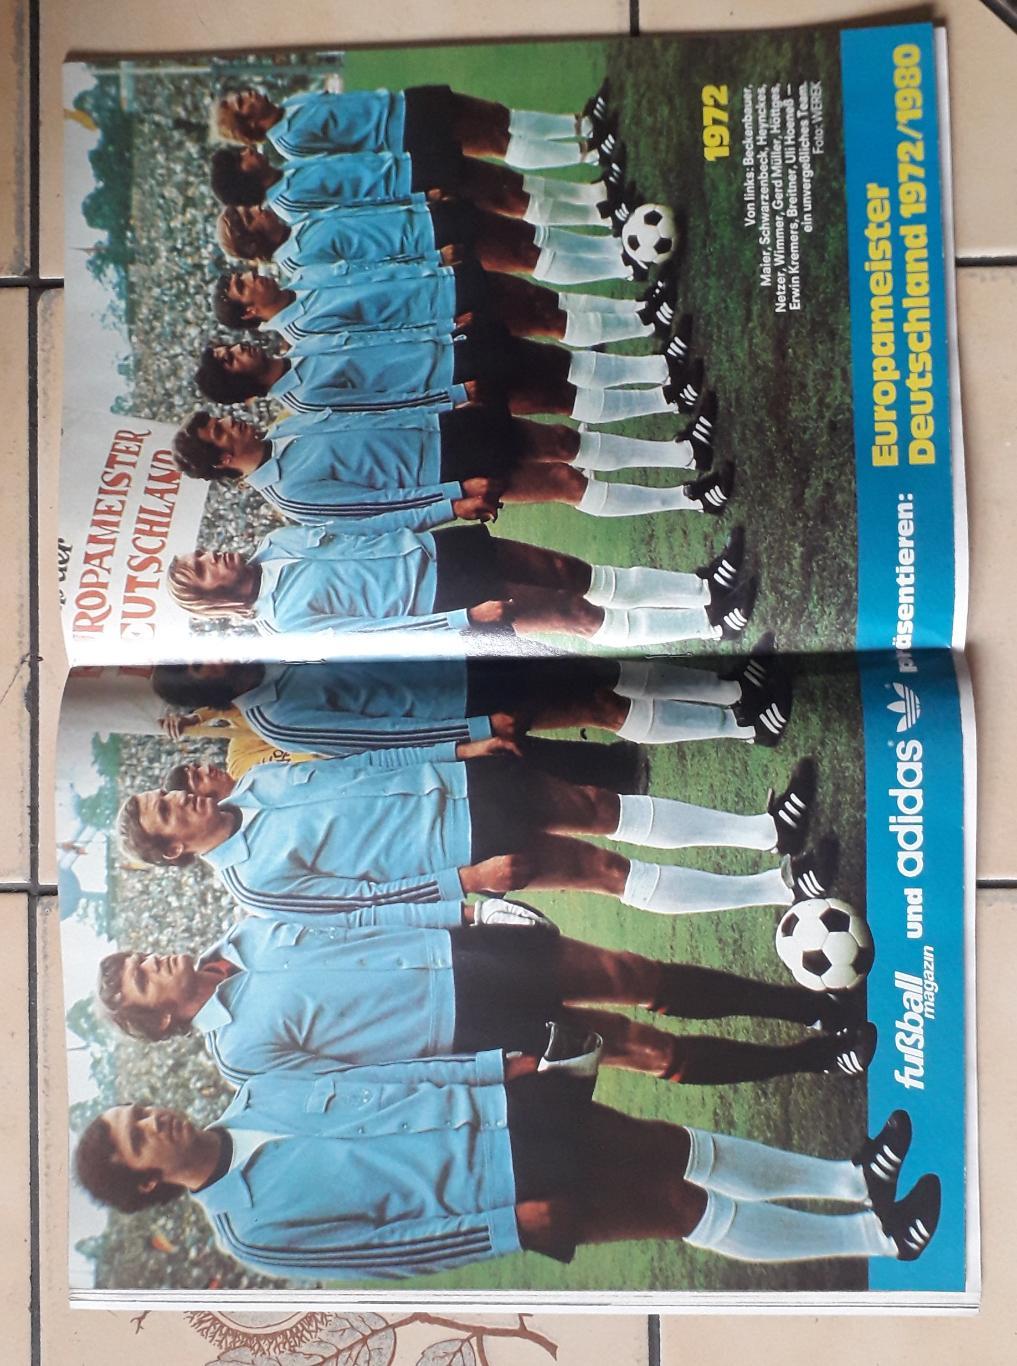 Kicker EURO 1984-Предложение для покупателя Михаил4. 4